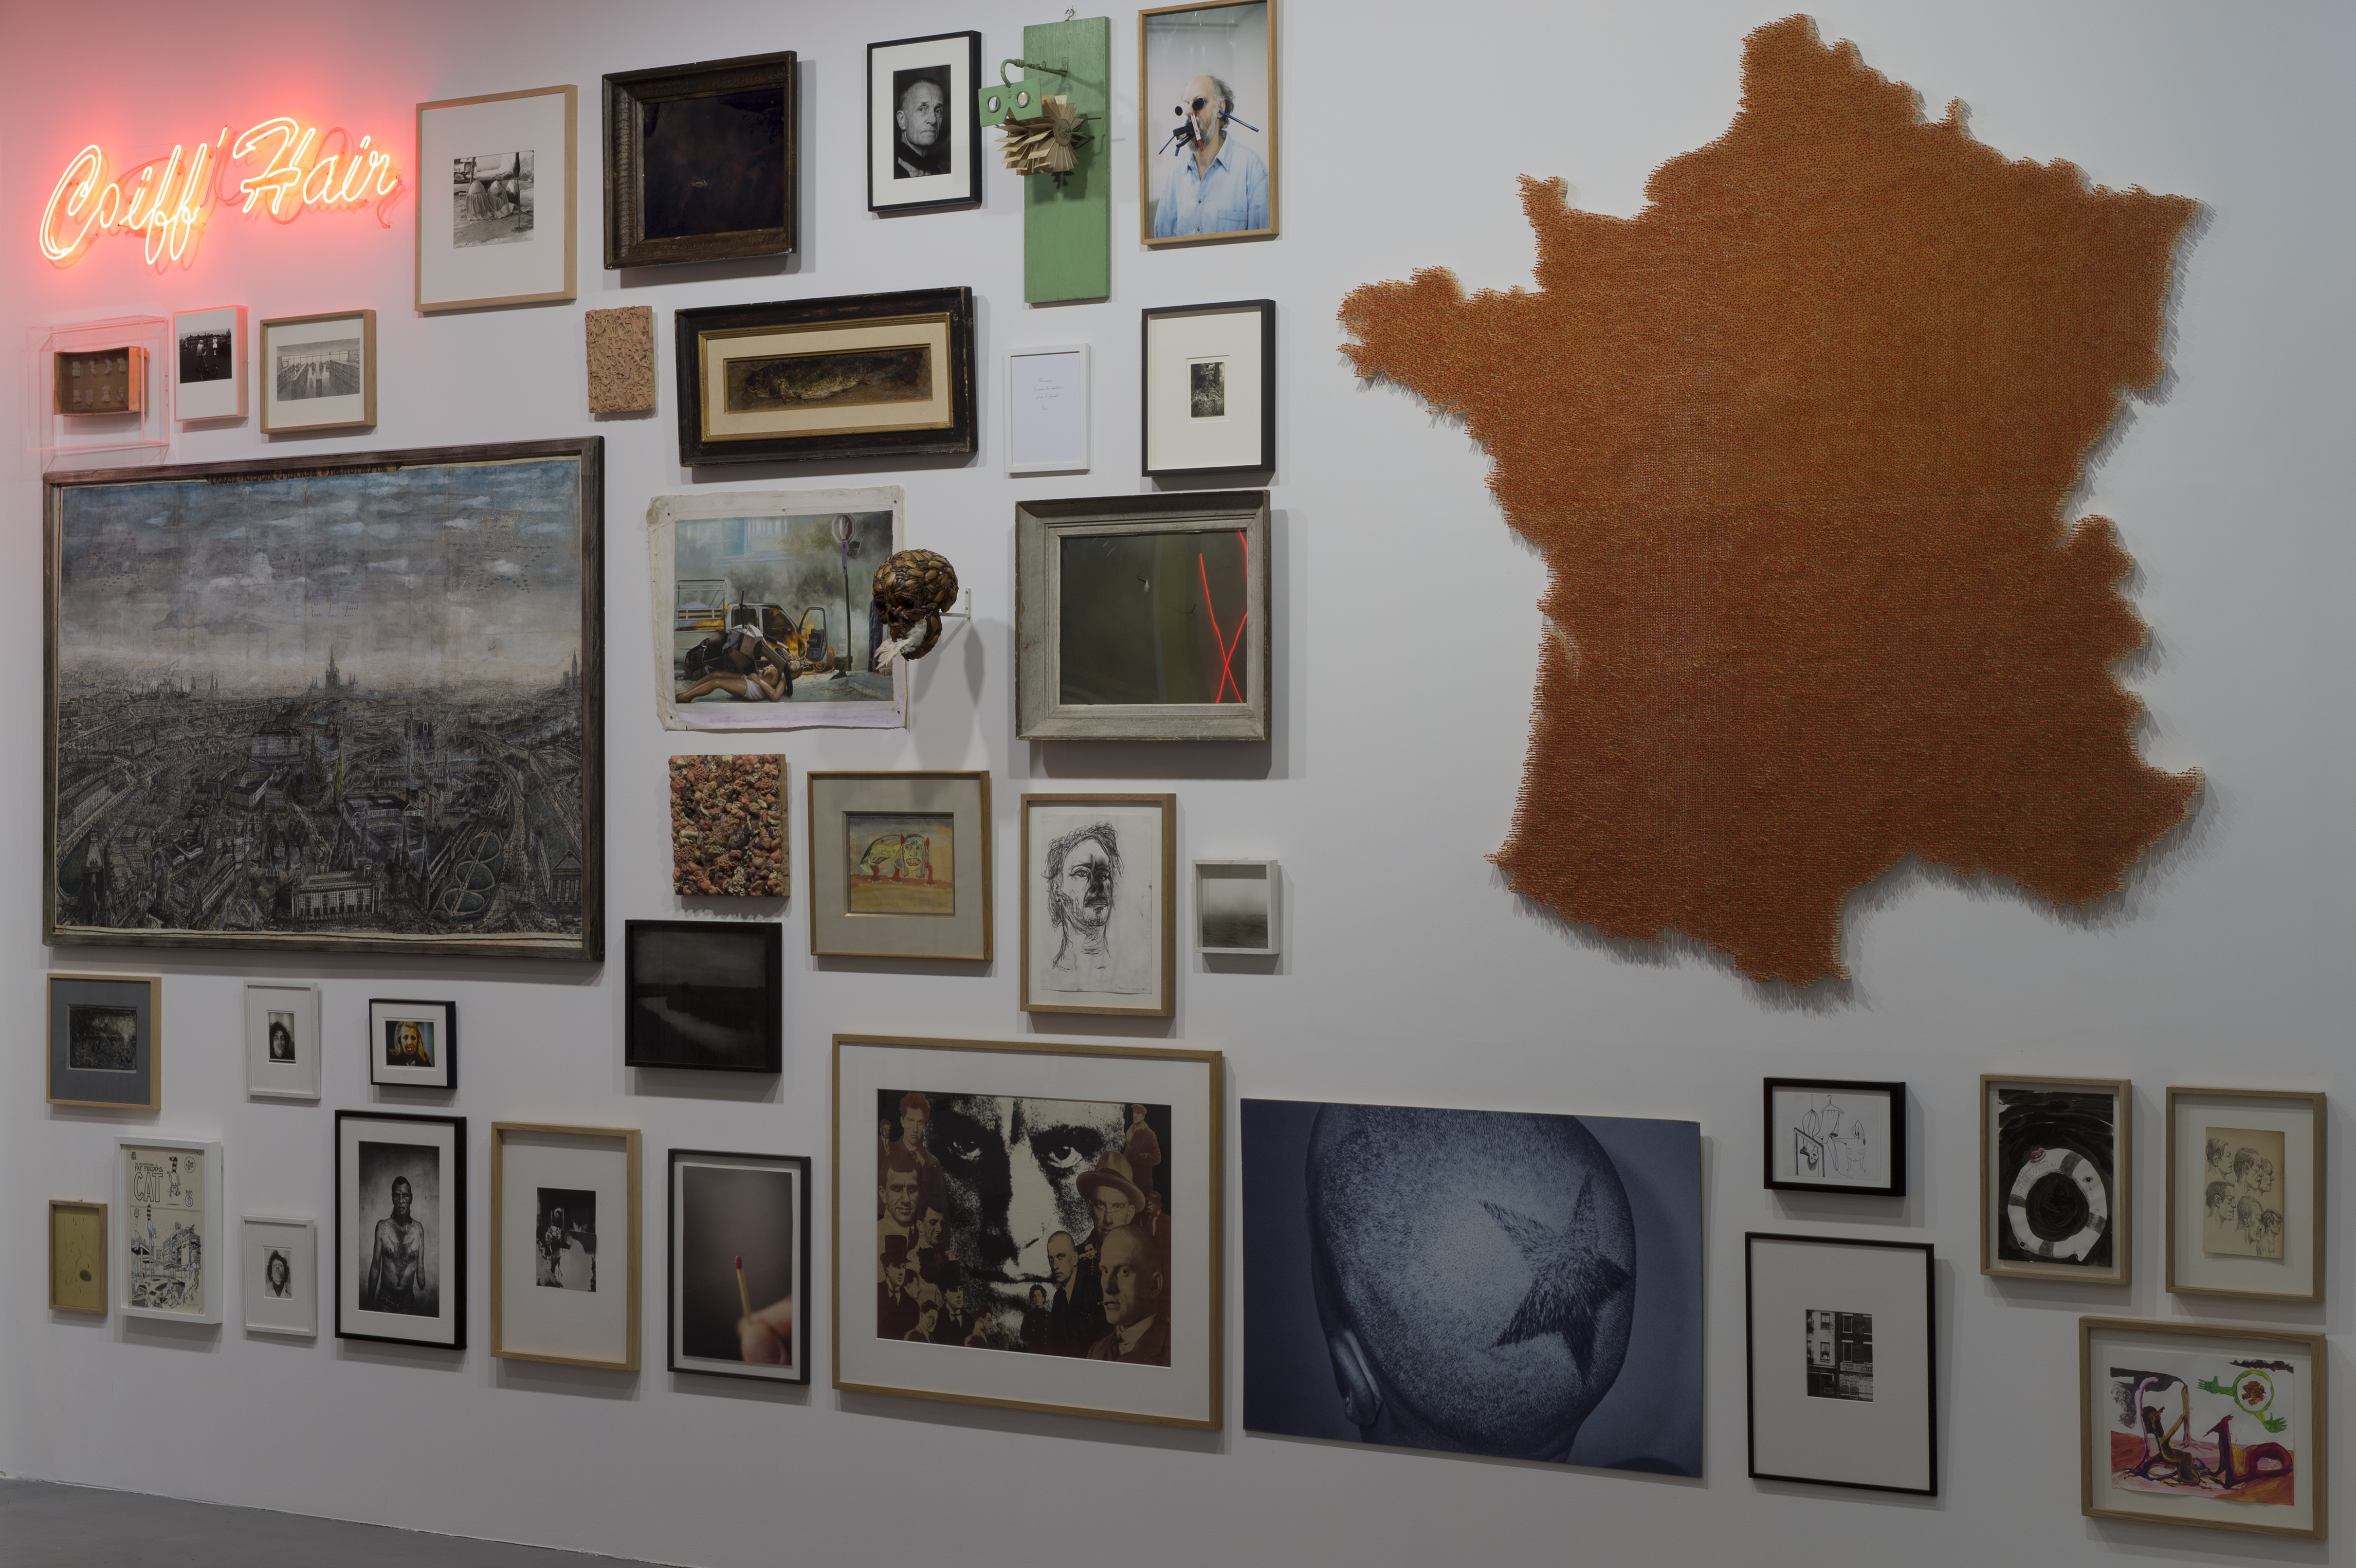 Vue de l'exposition Le Mur, Collection Antoine de Galbert © Marc Domage / la maison rouge, 2014